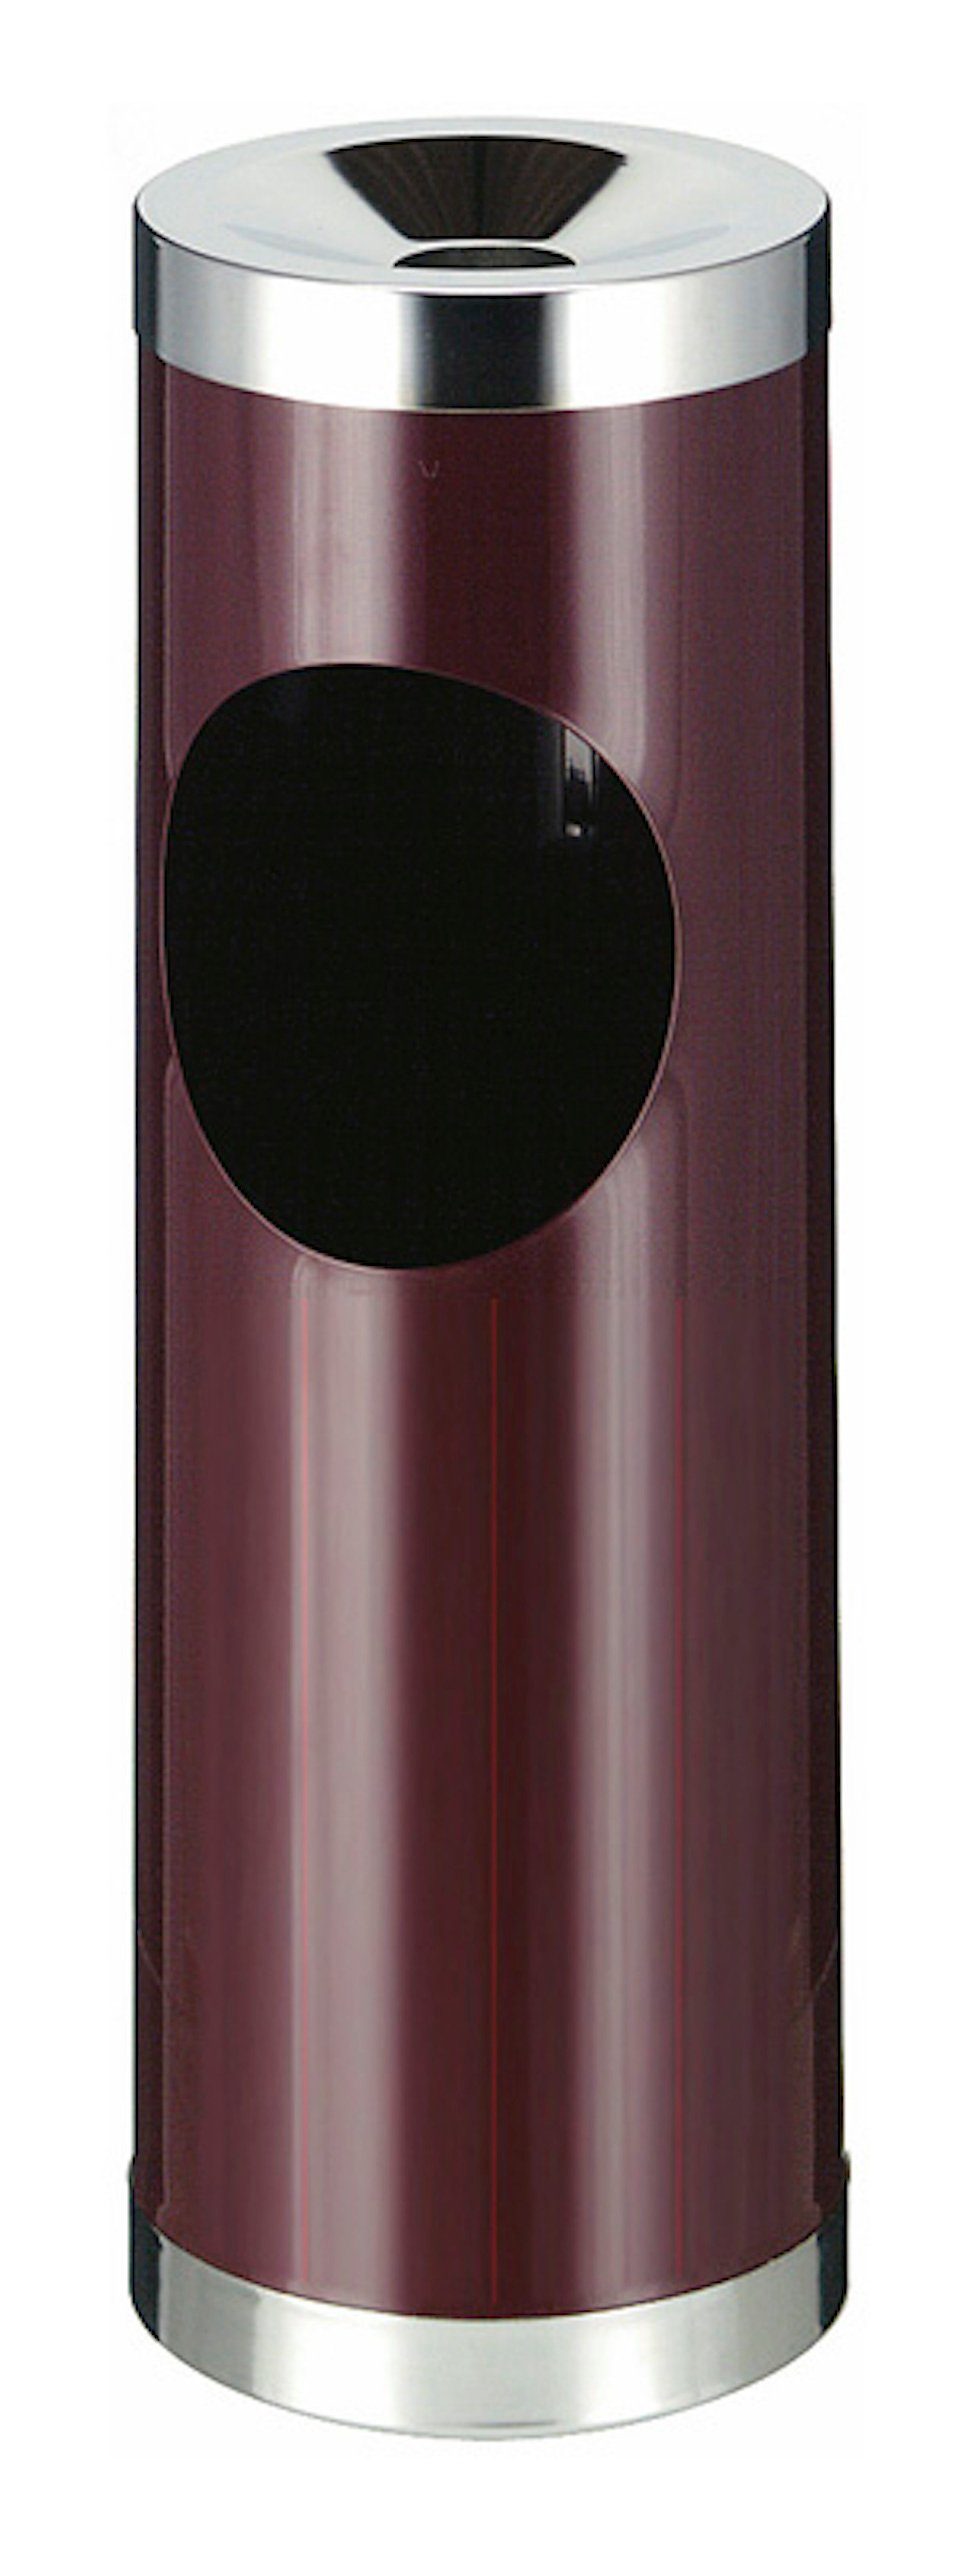 PROREGAL® Aschenbecher Runder Metall Kombiascher mit ovaler Einwurfsöffnung, 30L, Grau Bordeaux